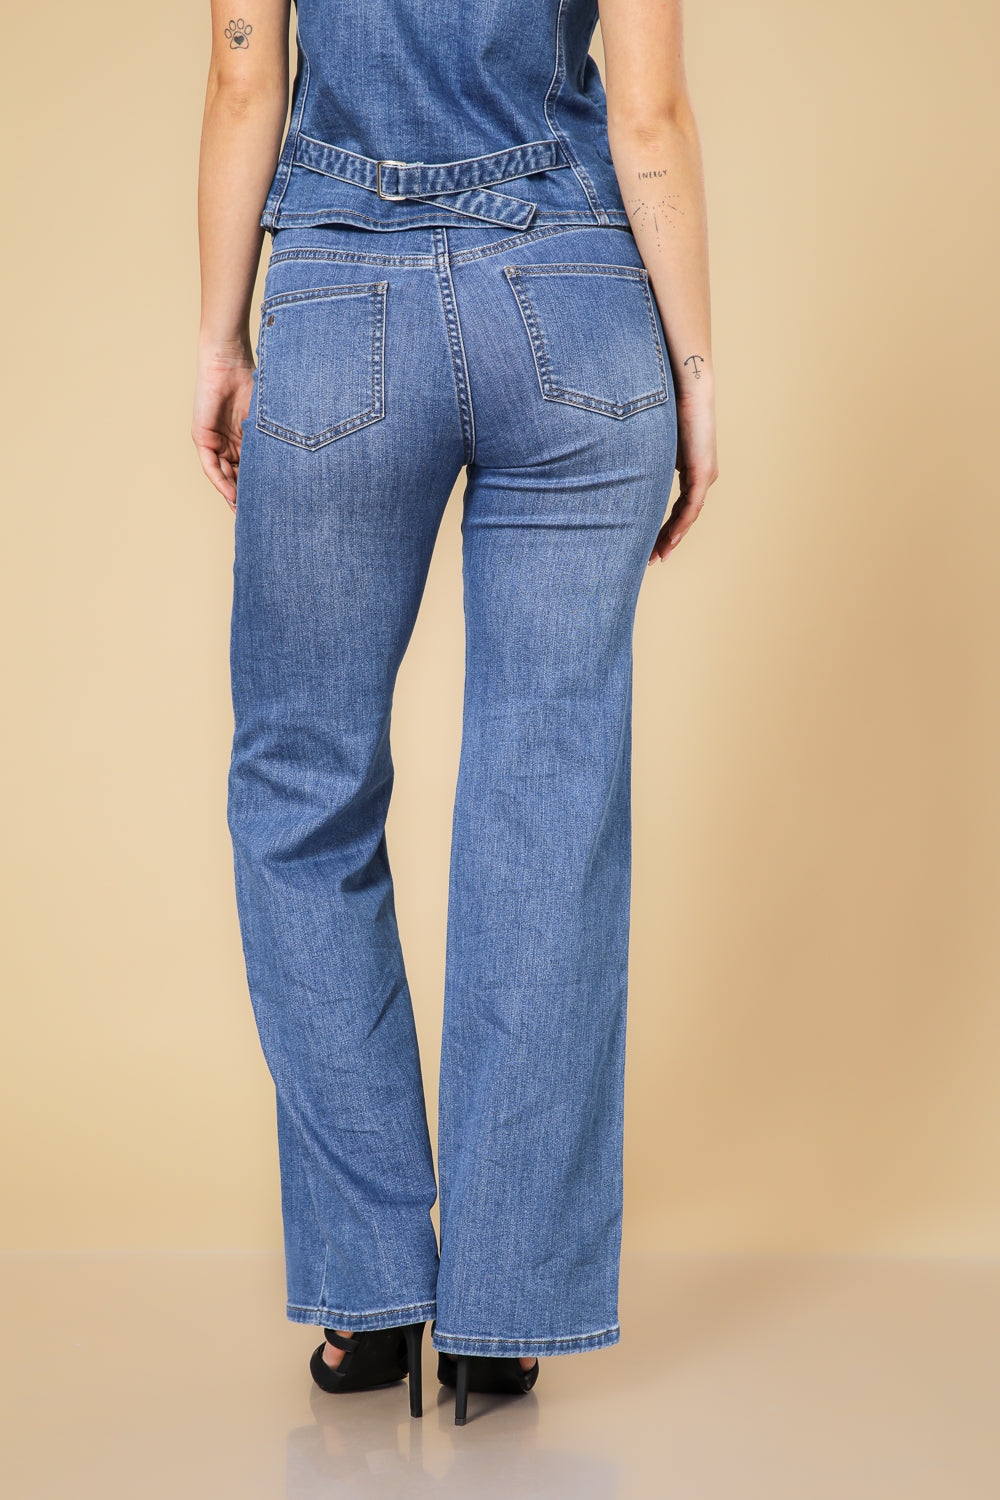 מכנס ג'ינס בוטקאט בצבע כחול